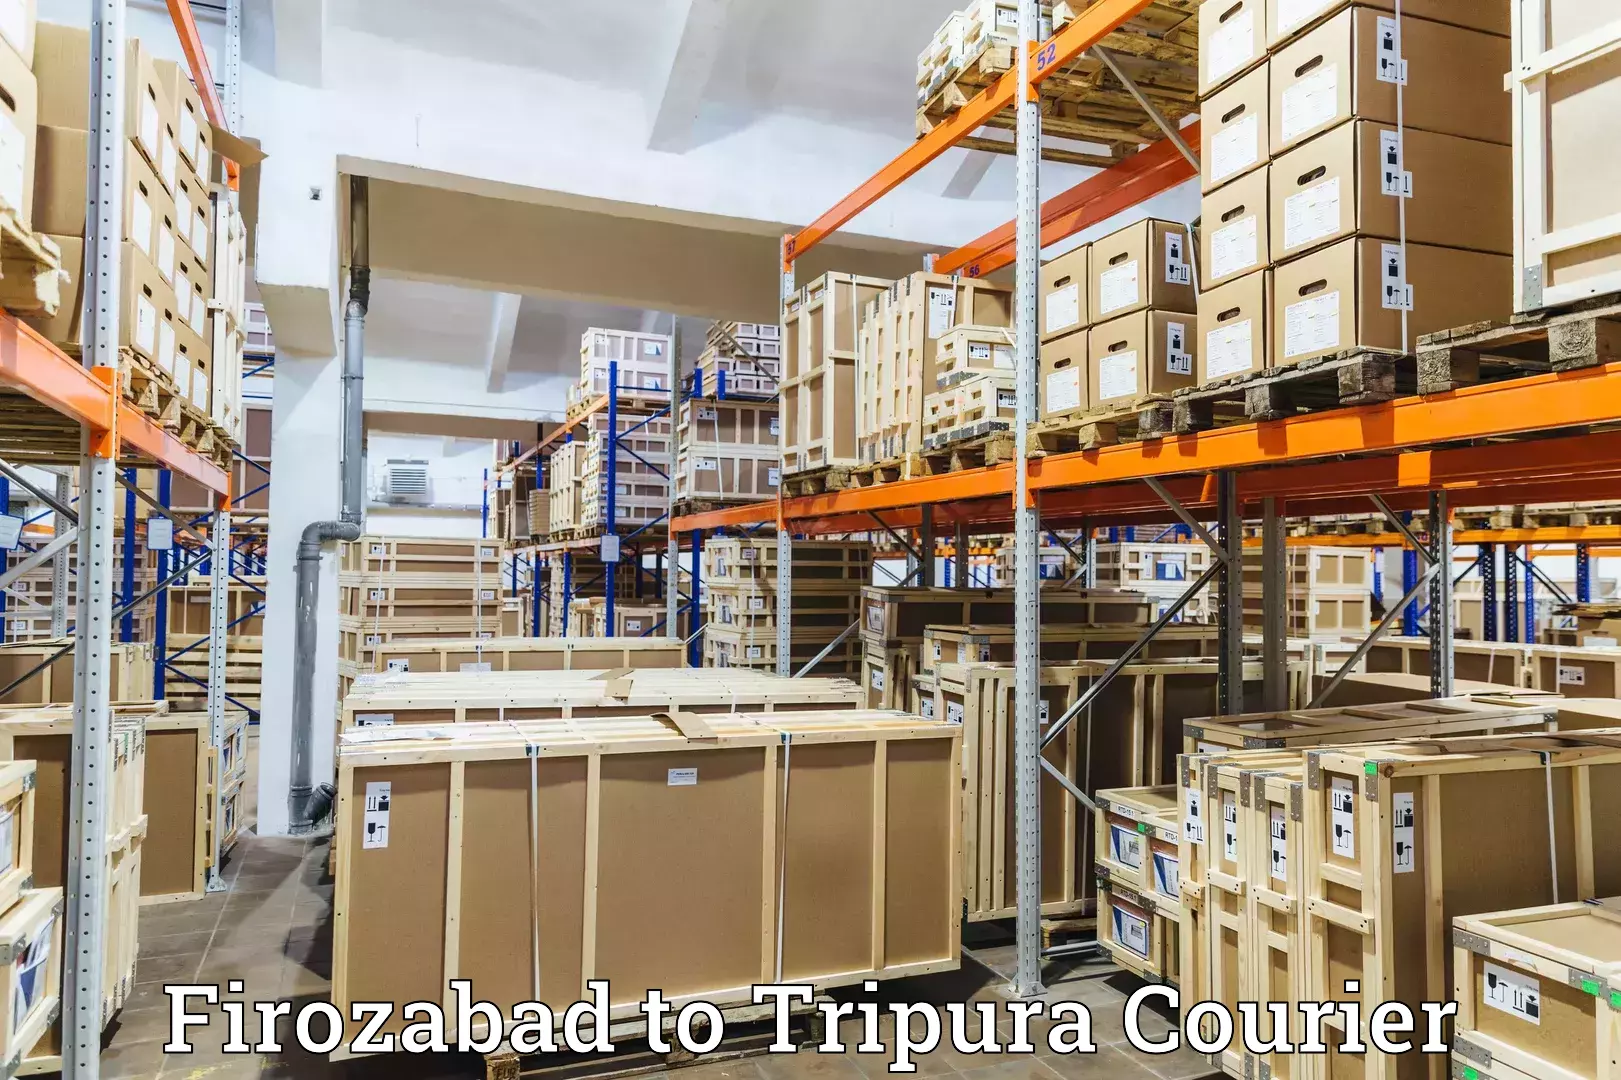 24/7 courier service Firozabad to Teliamura